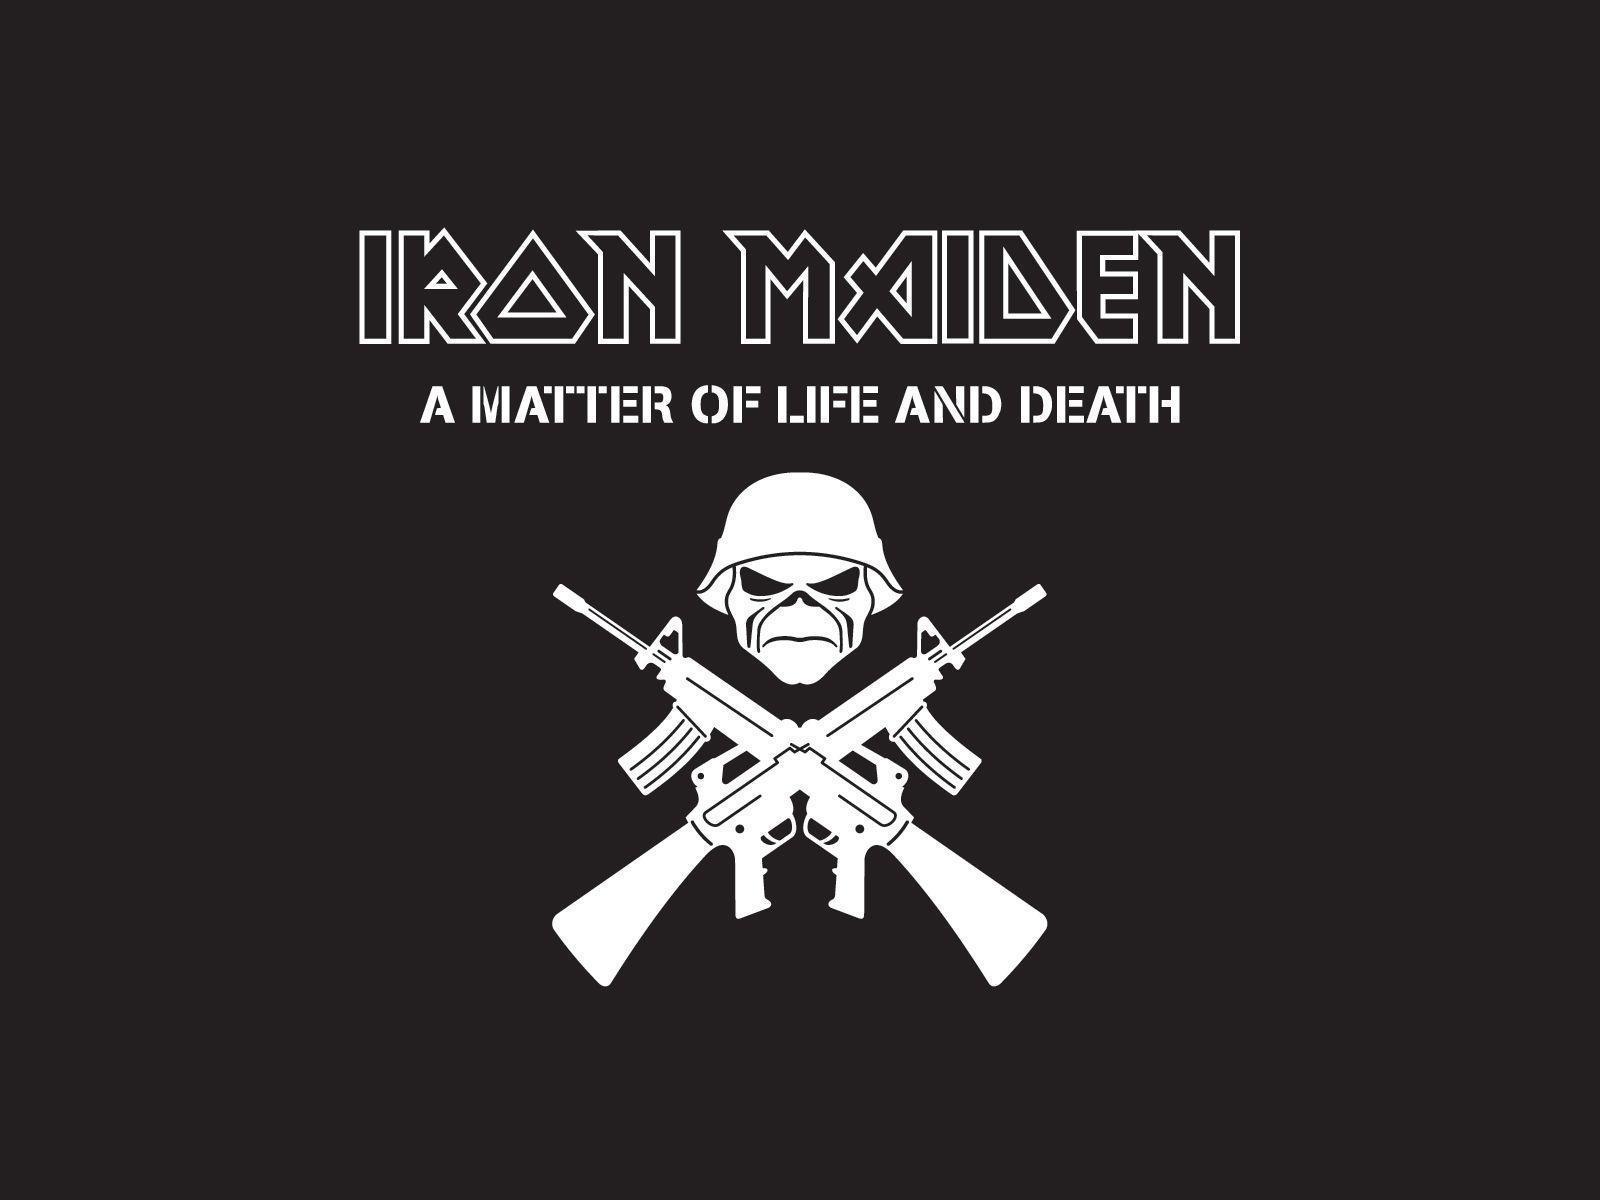 Iron Maiden band logo wallpaper. Band logos band logos, metal bands logos, punk bands logos